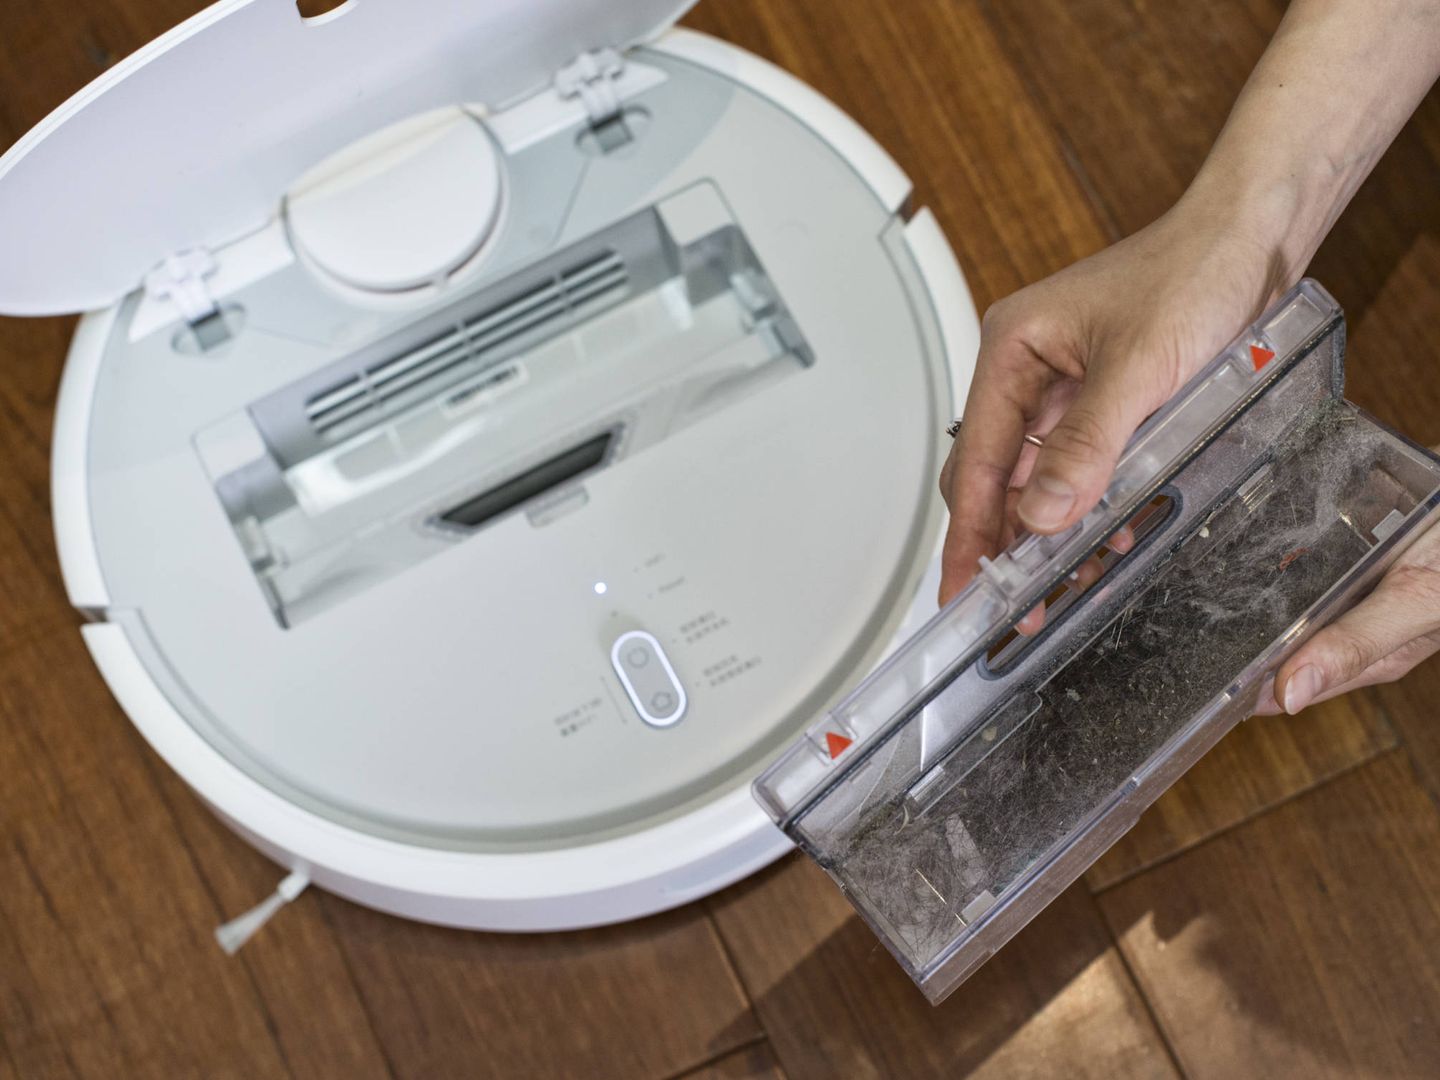 Probamos el robot aspirador de Xiaomi que limpia tu casa (y no tu